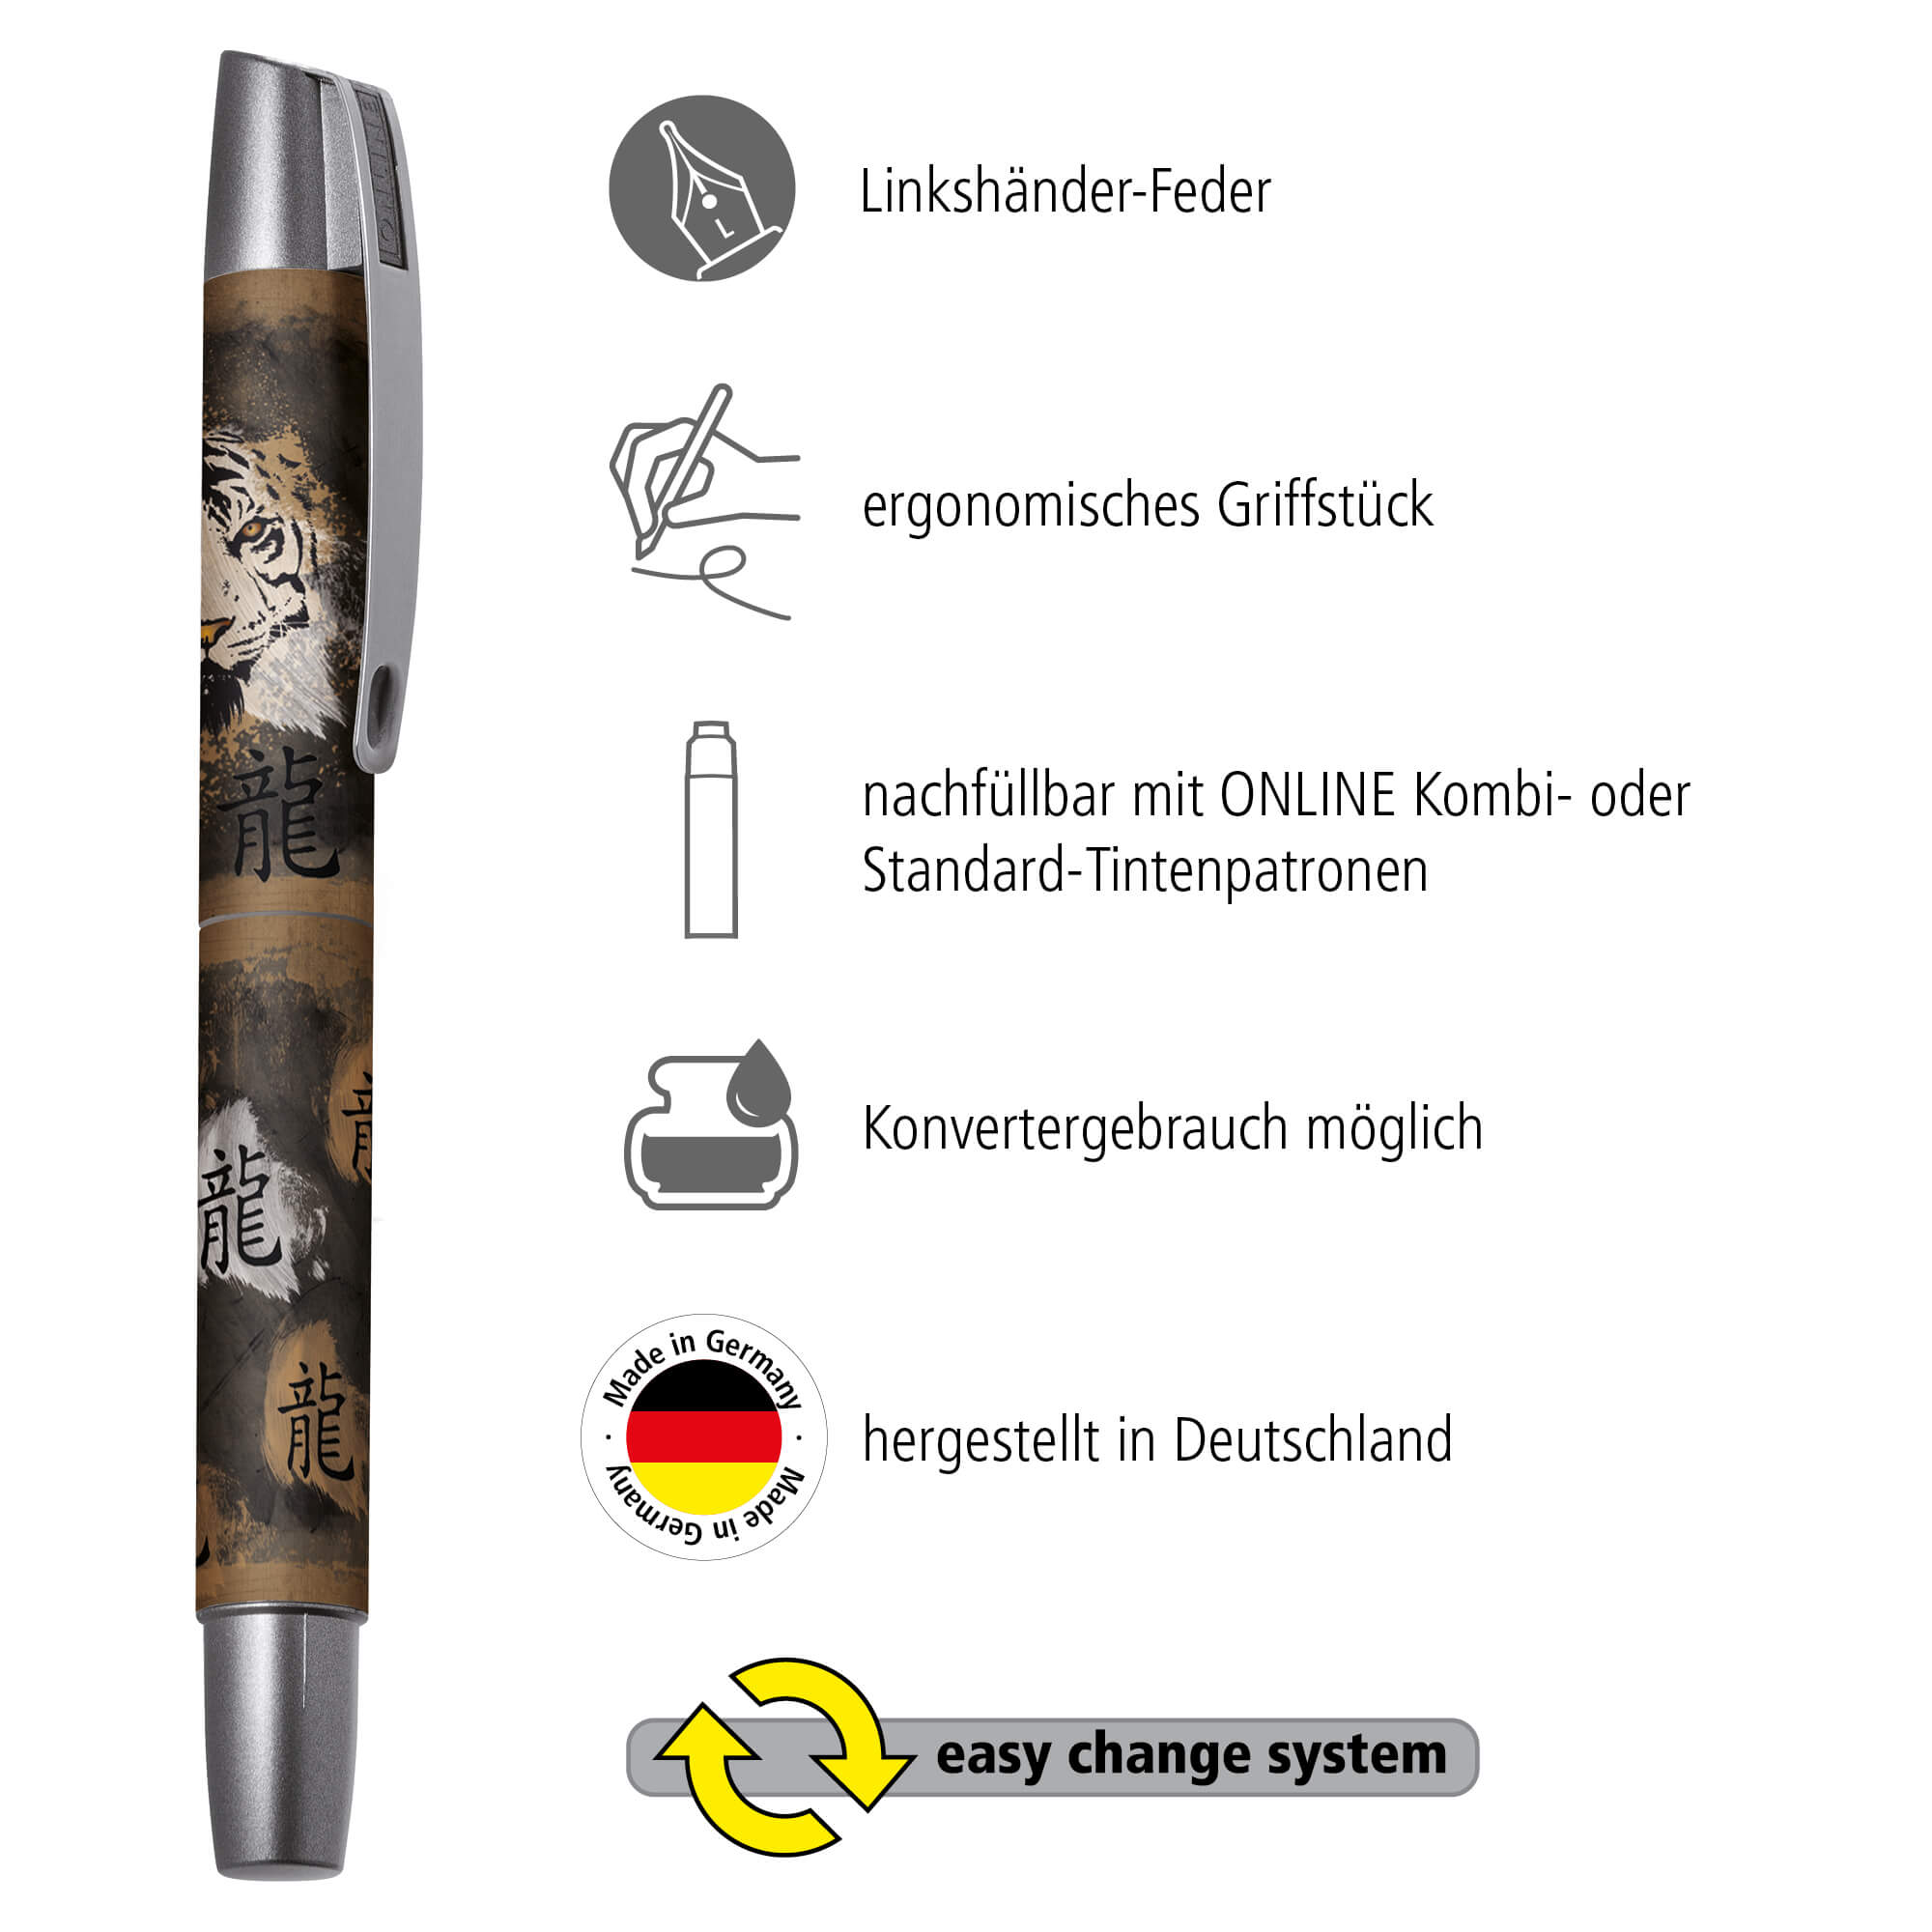 Füller mit Linkshänder-Feder hergestellt in Deutschland